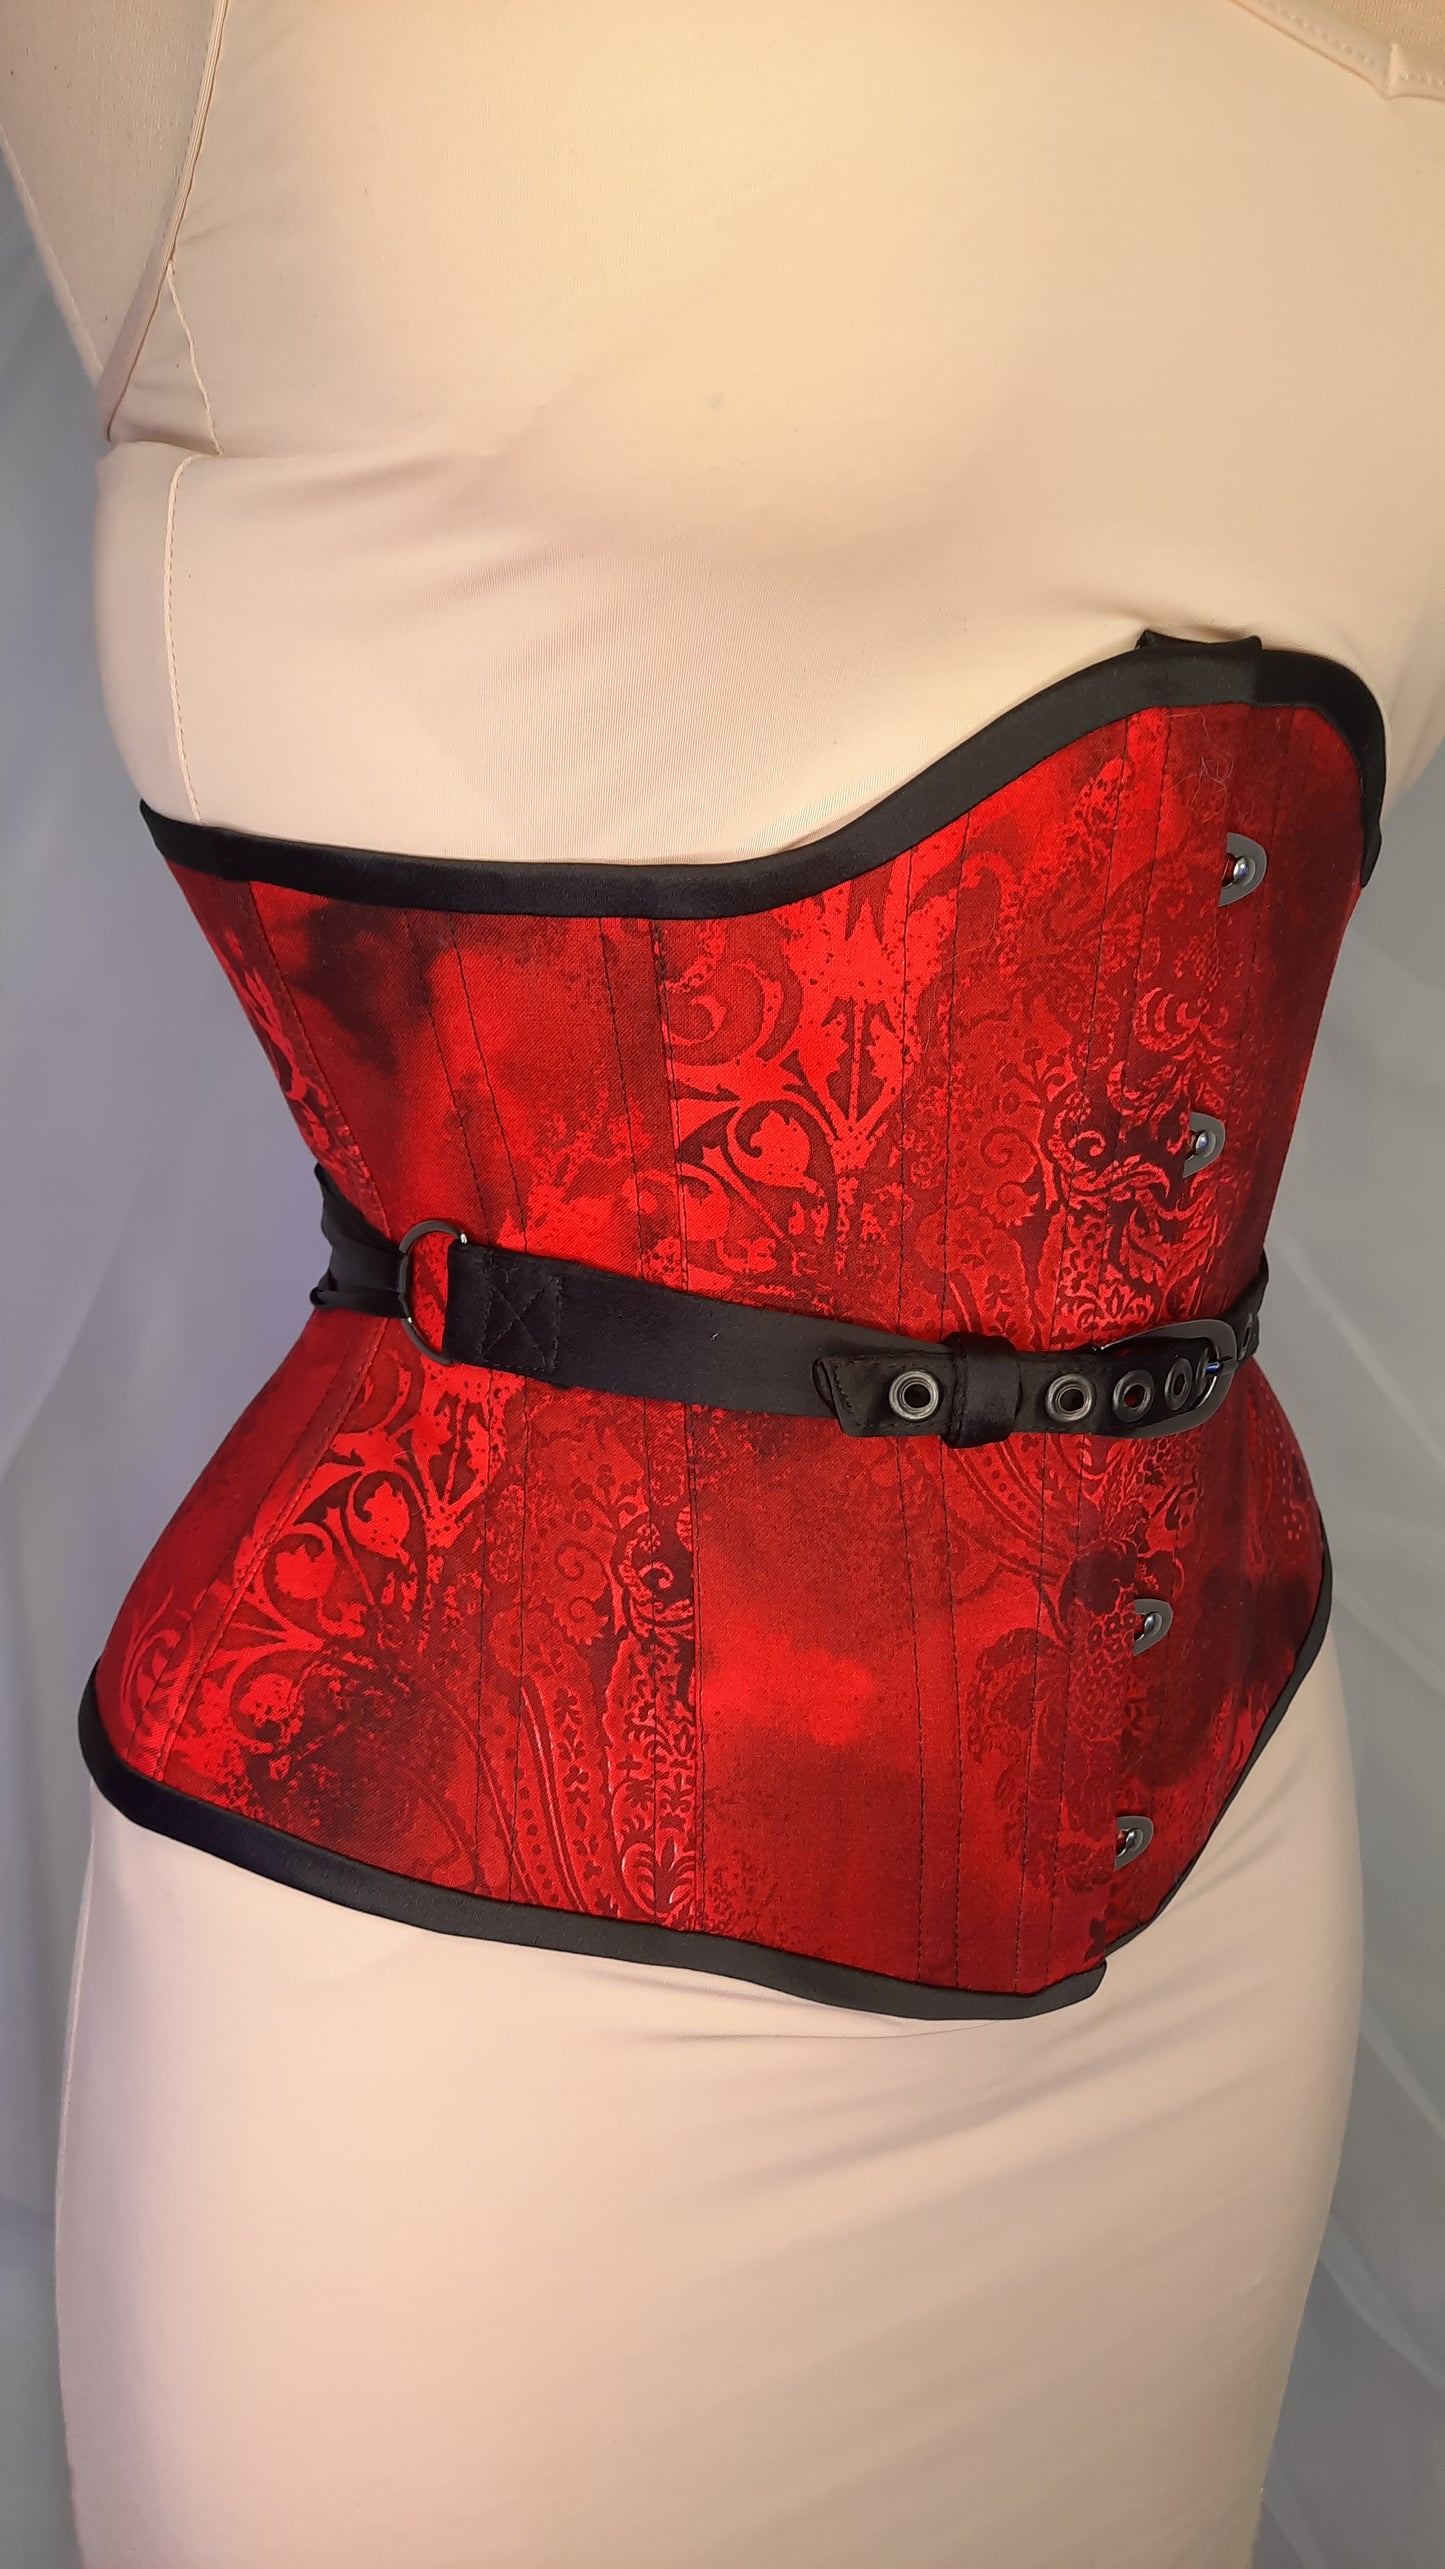 Fan-laced corset